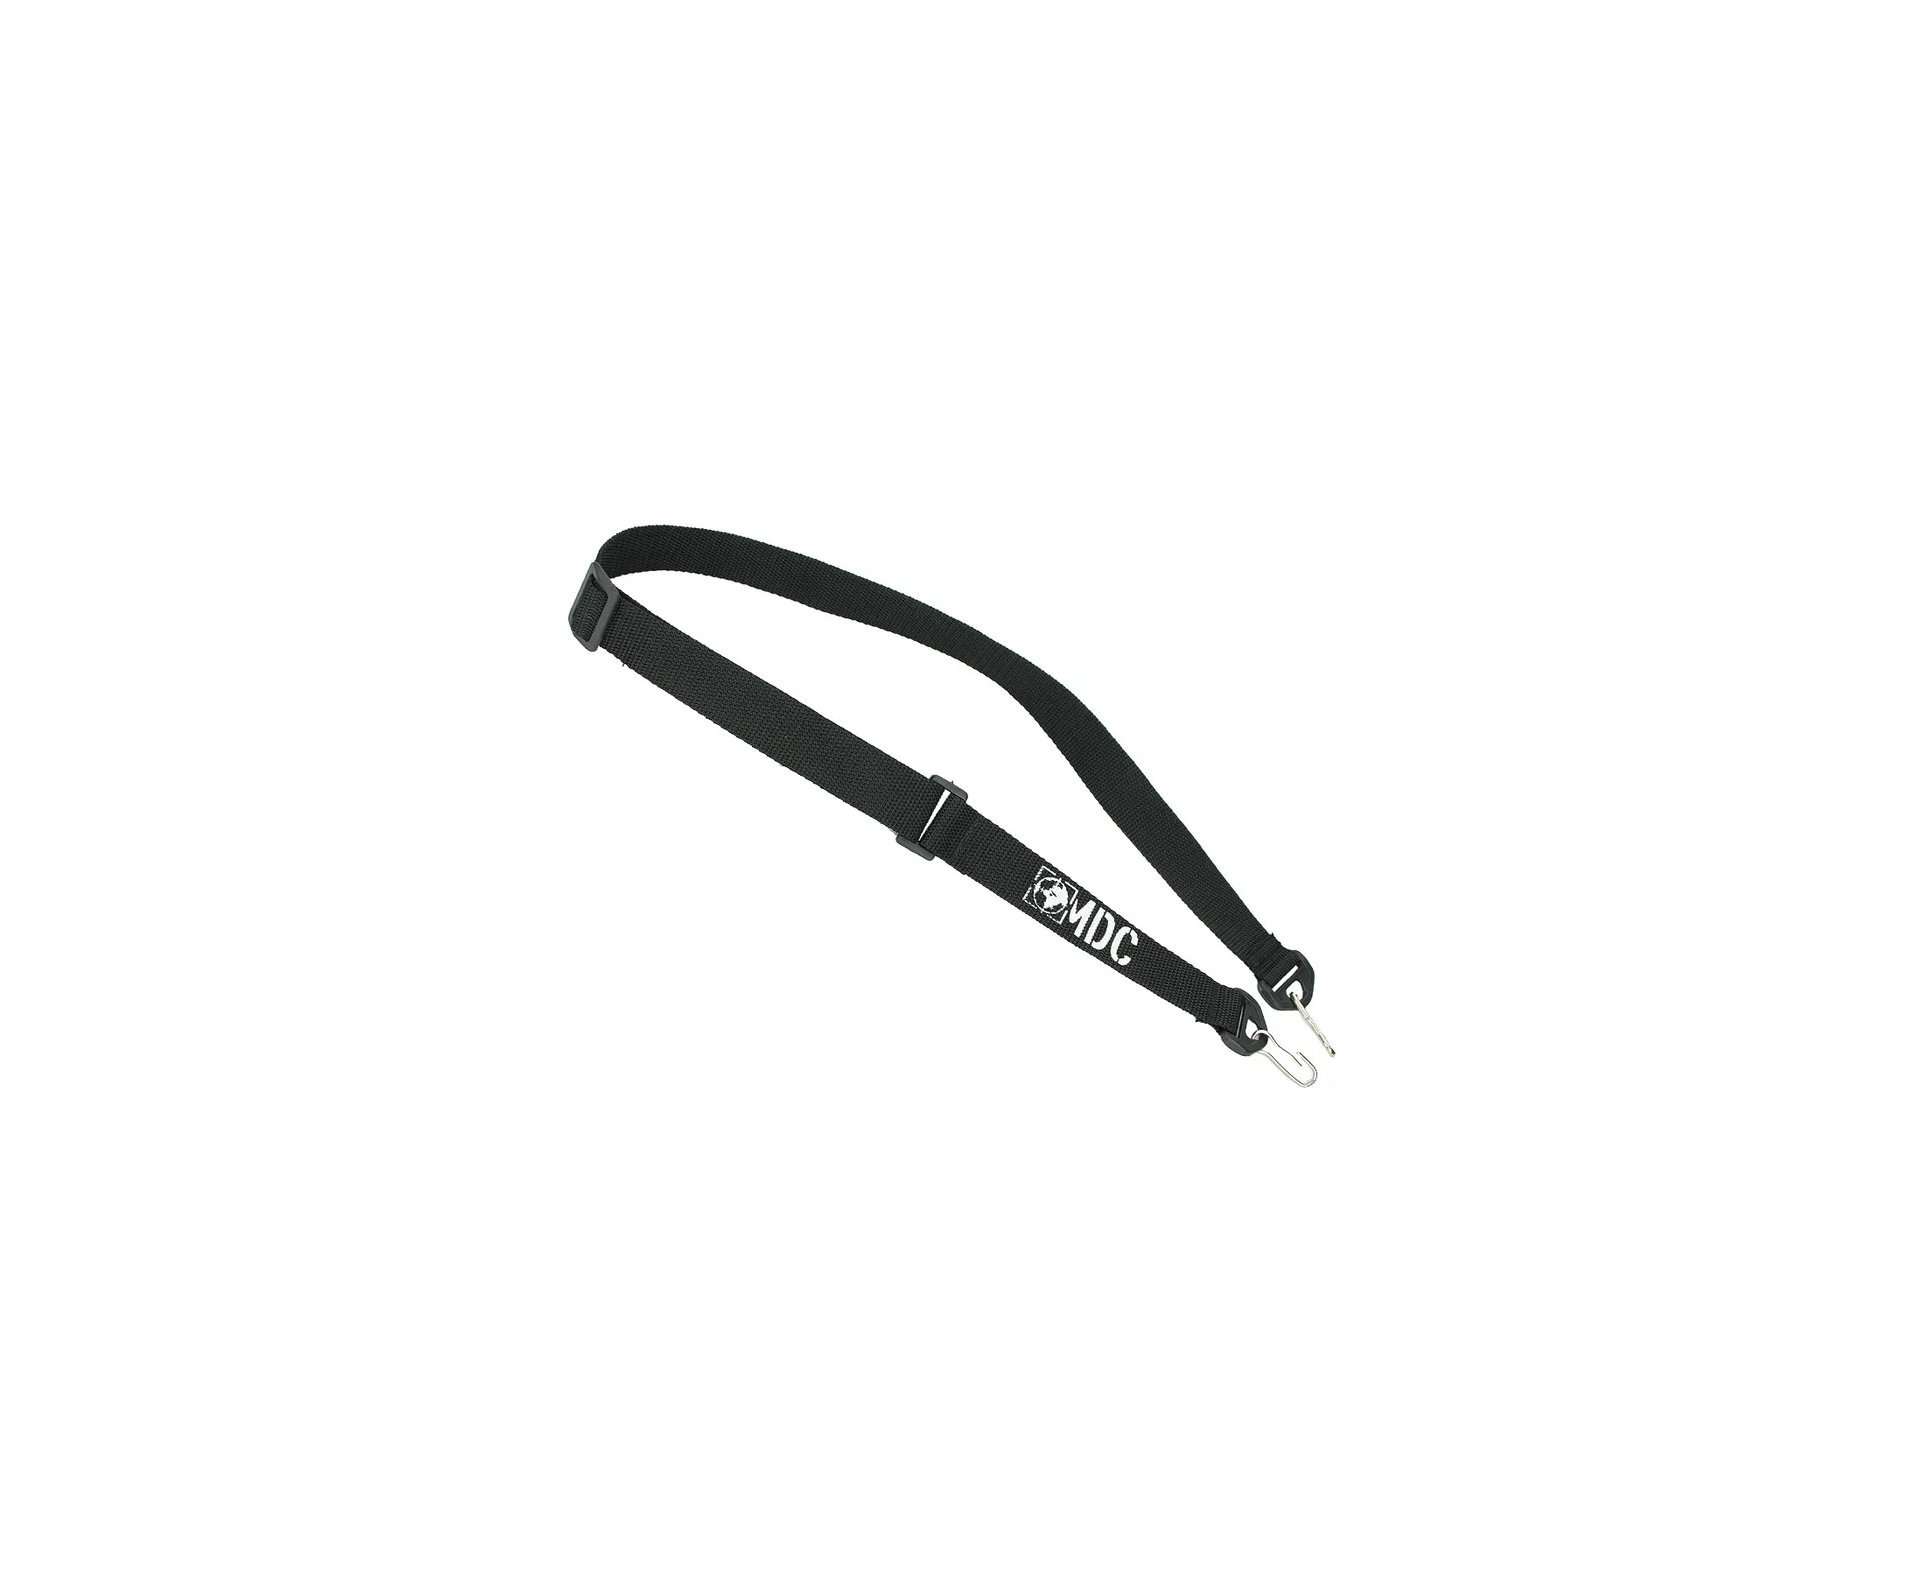 Carabina De Pressão Cbc Jade Mais Nitro Tan Cal 4,5mm + capa + luneta + acessorios